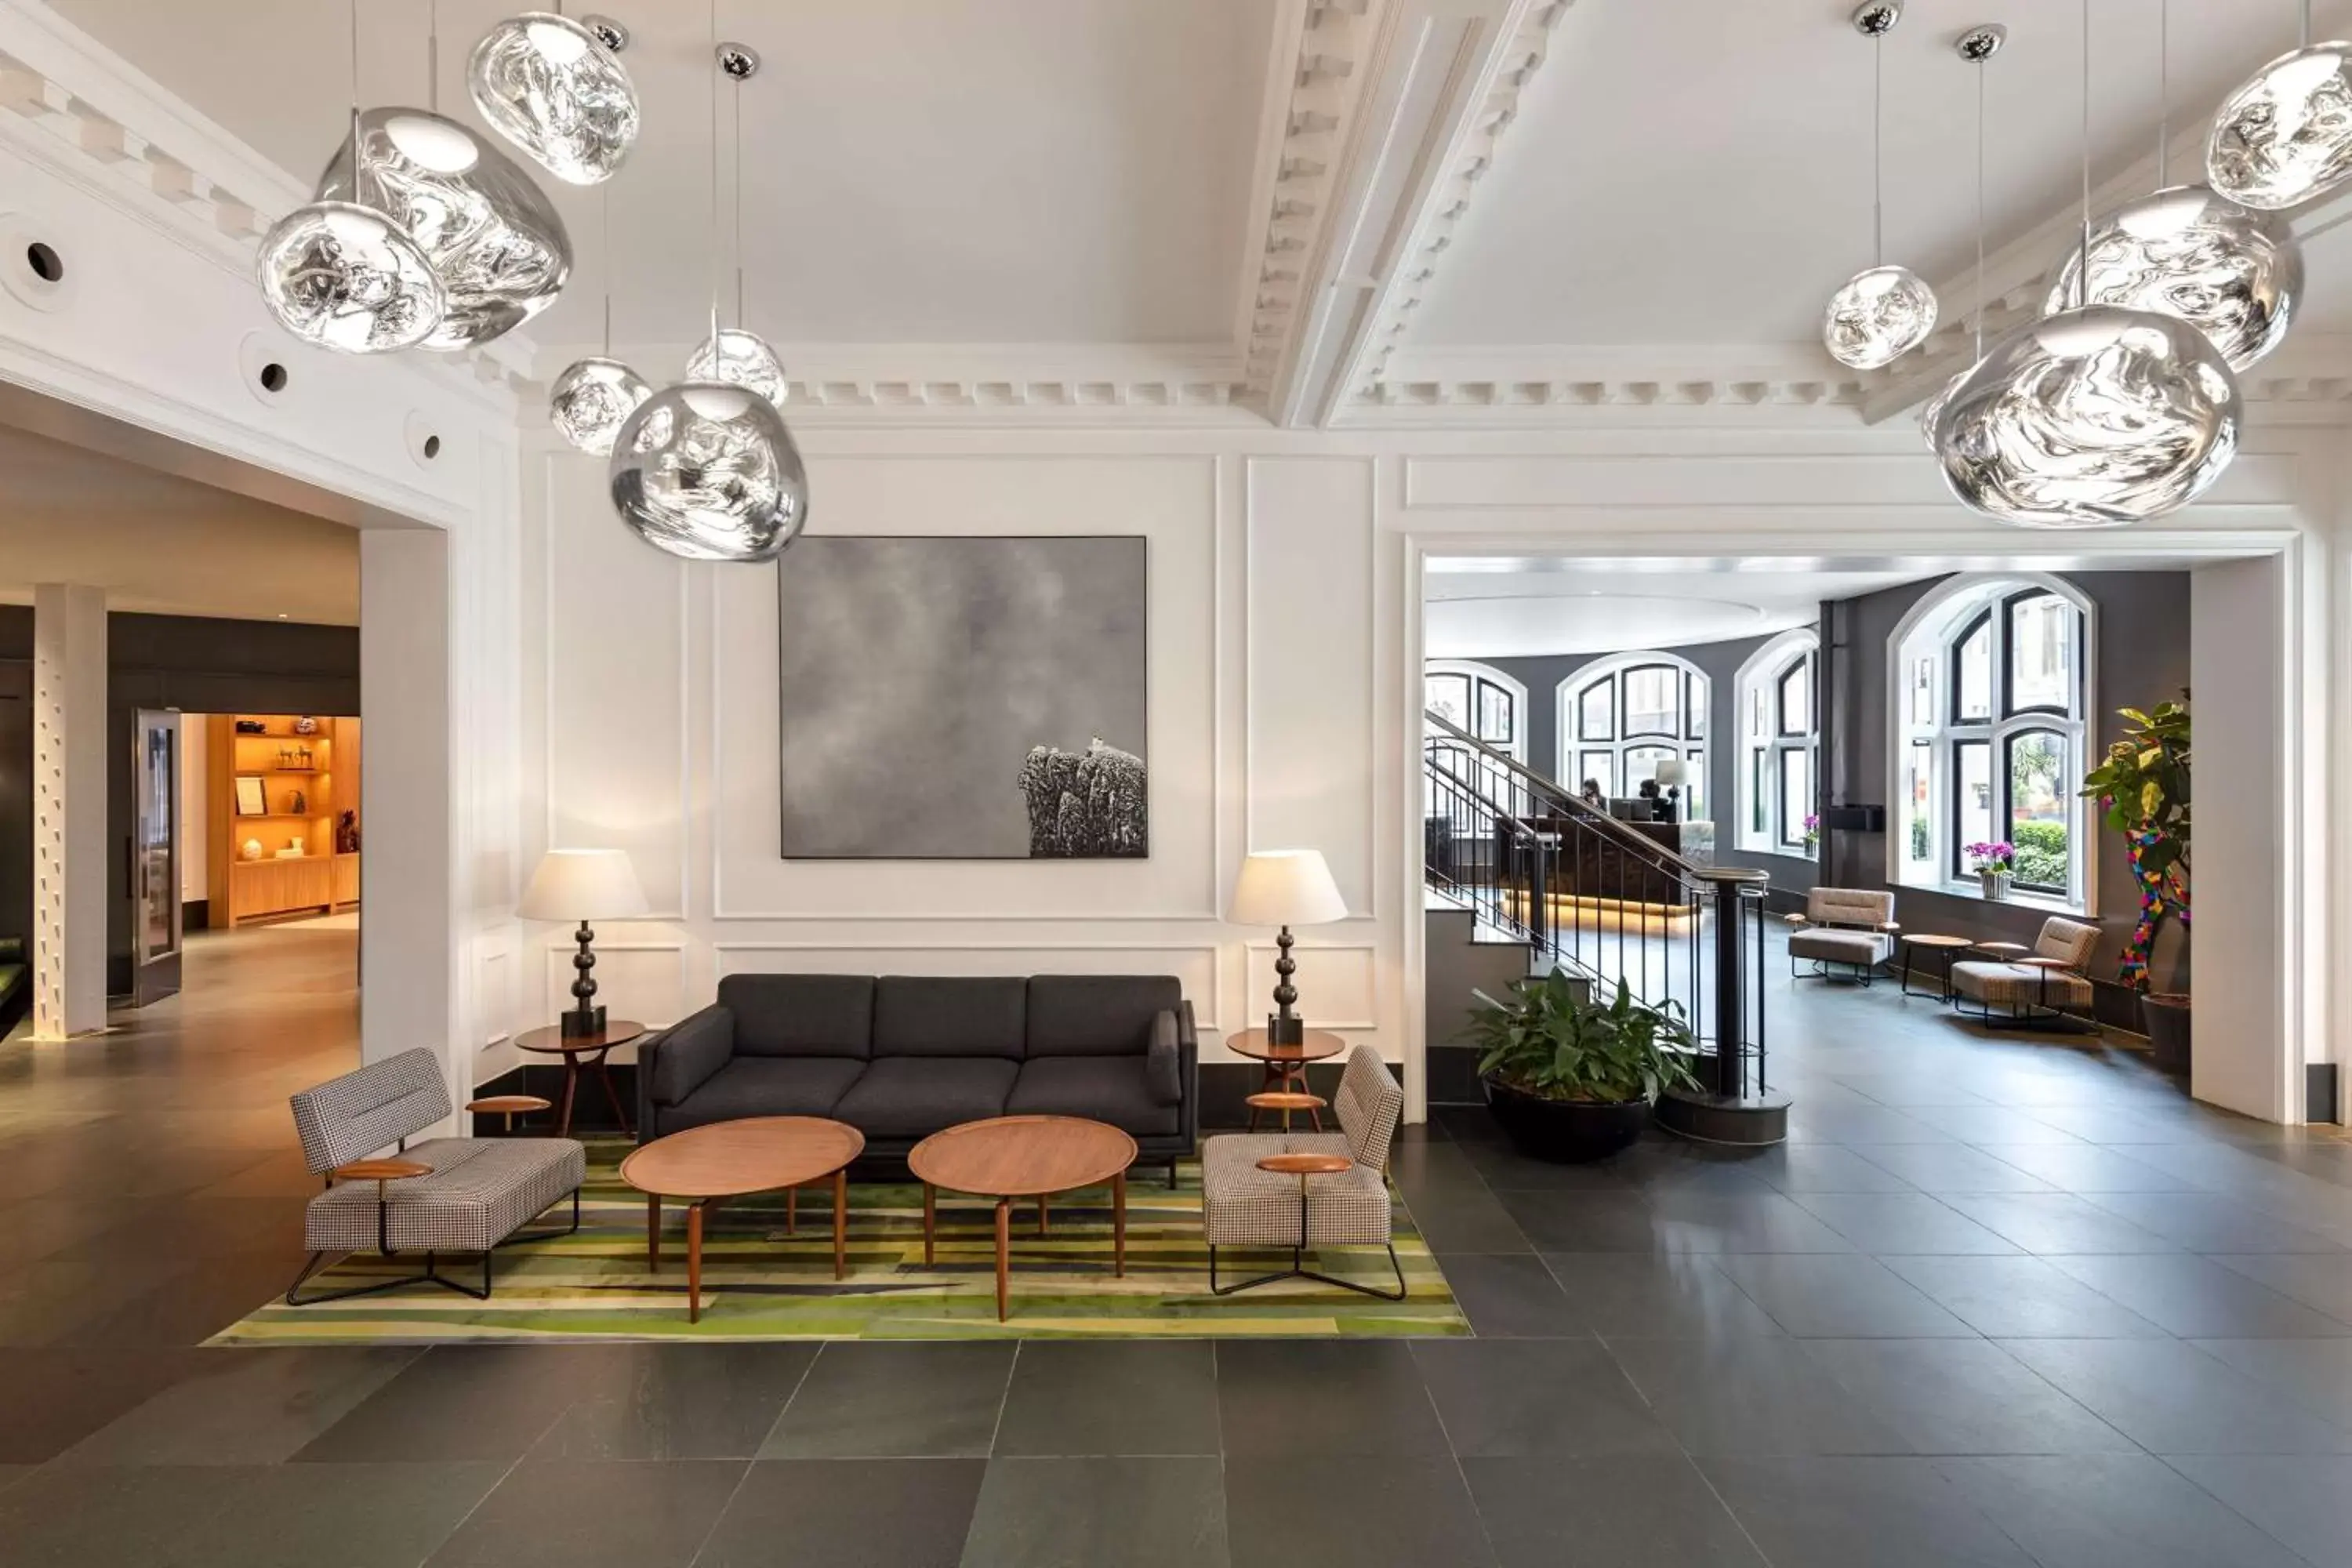 Lobby or reception, Lobby/Reception in Radisson Blu Edwardian Bloomsbury Street Hotel, London